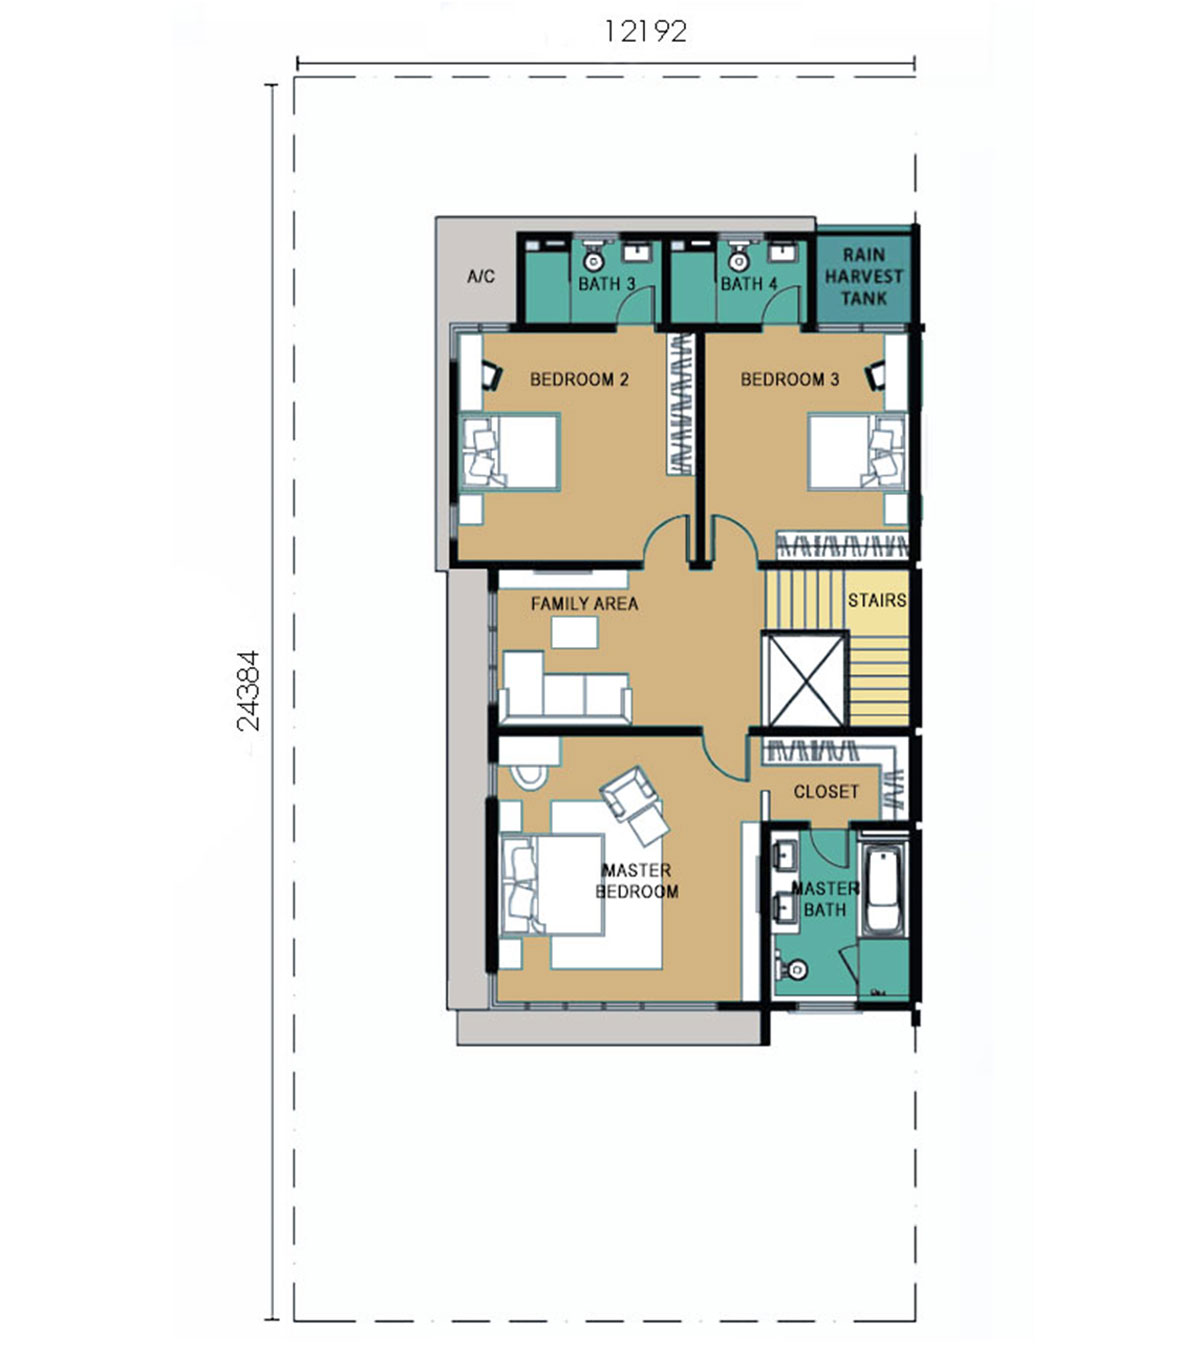 3-Storey Semi-Detached - Type B - Second Floor